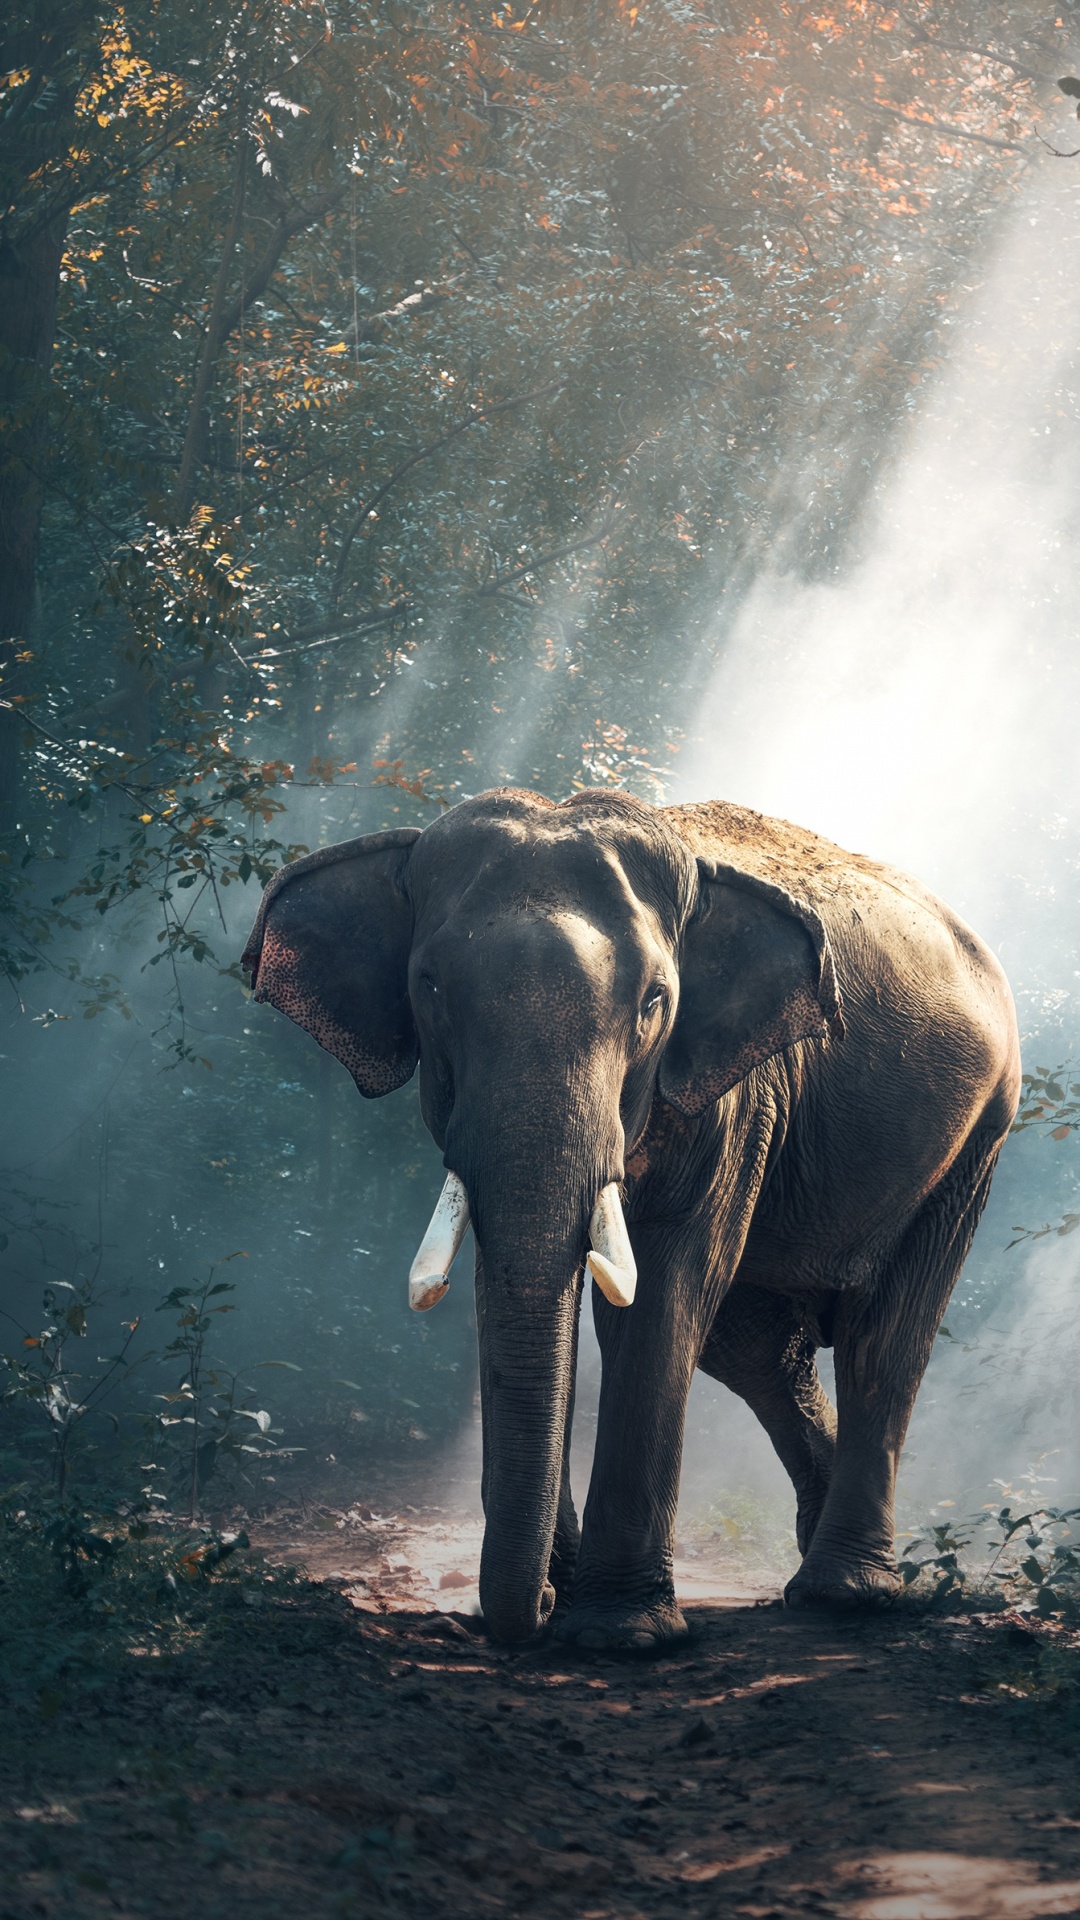 Elefante Caminando en el Bosque. Wallpaper in 1080x1920 Resolution